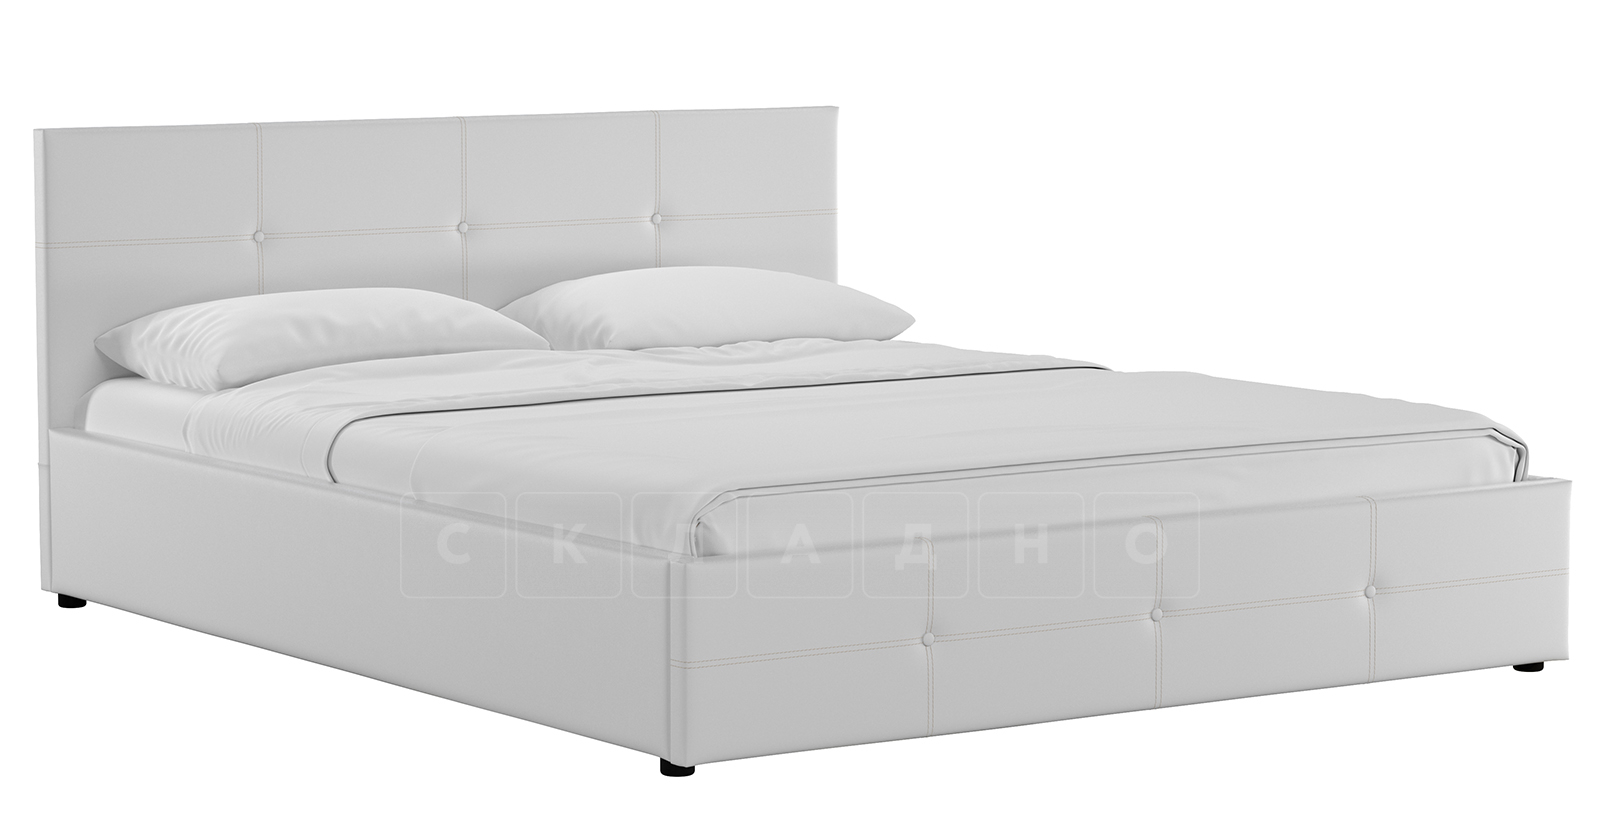 Мягкая кровать Синди 160 см белый с подъемным механизмом фото 1 | интернет-магазин Складно